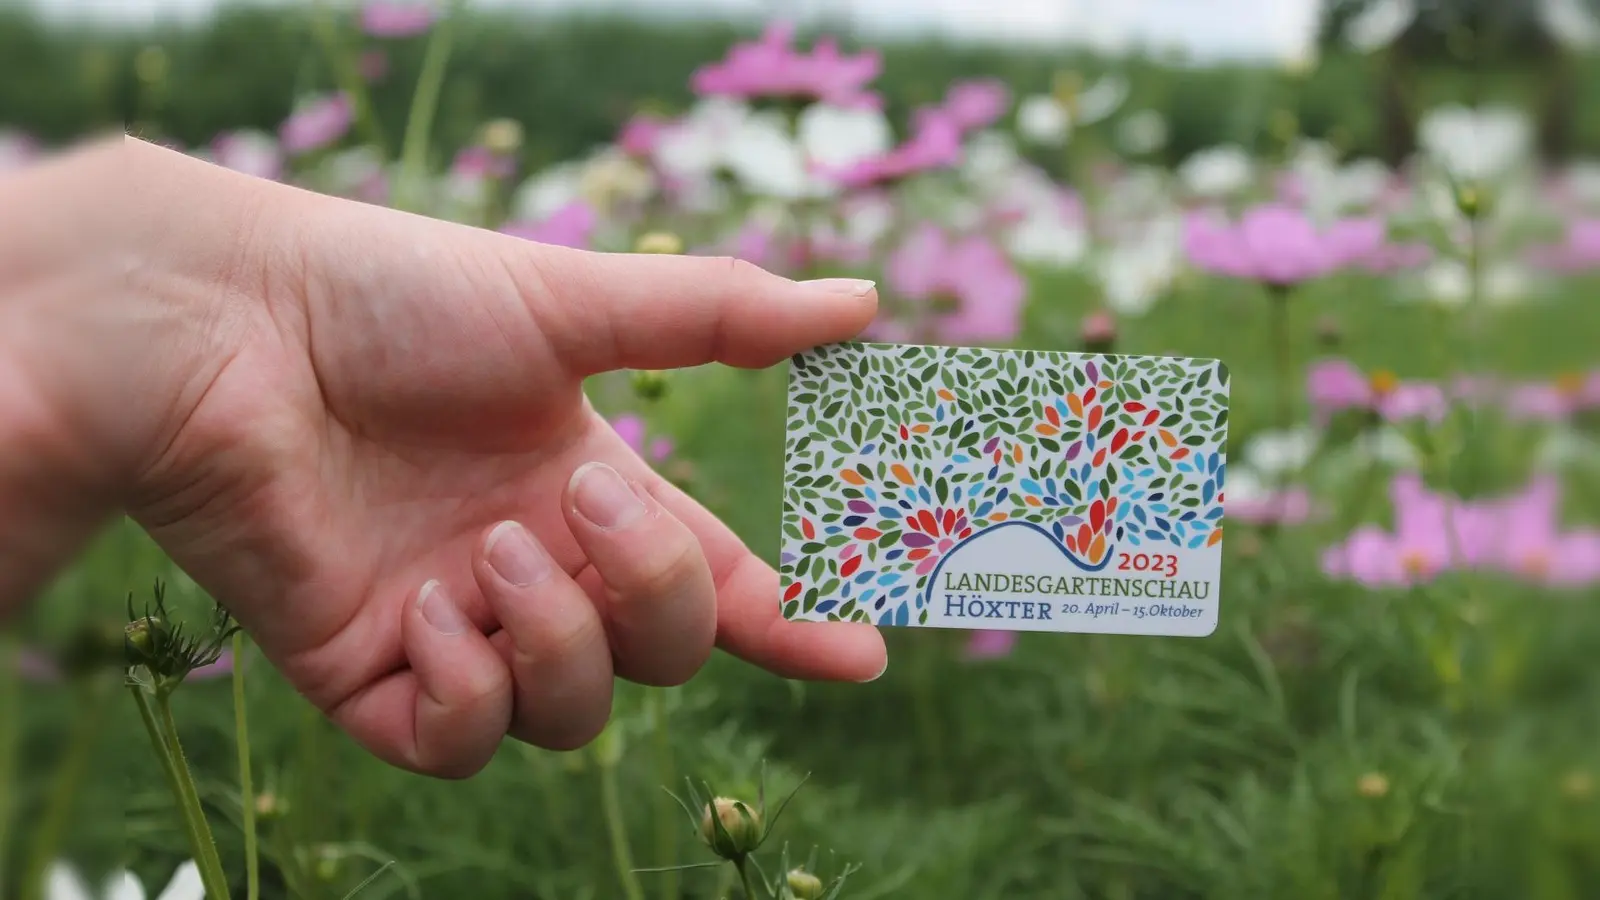 34.000 Dauerkarten hat die Landesgartenschau Höxter inzwischen verkauft. Bis Montag, den 29. Mai, gibt es die Dauerkarte noch rabattiert. Danach endet die Aktion. (Foto: privat)